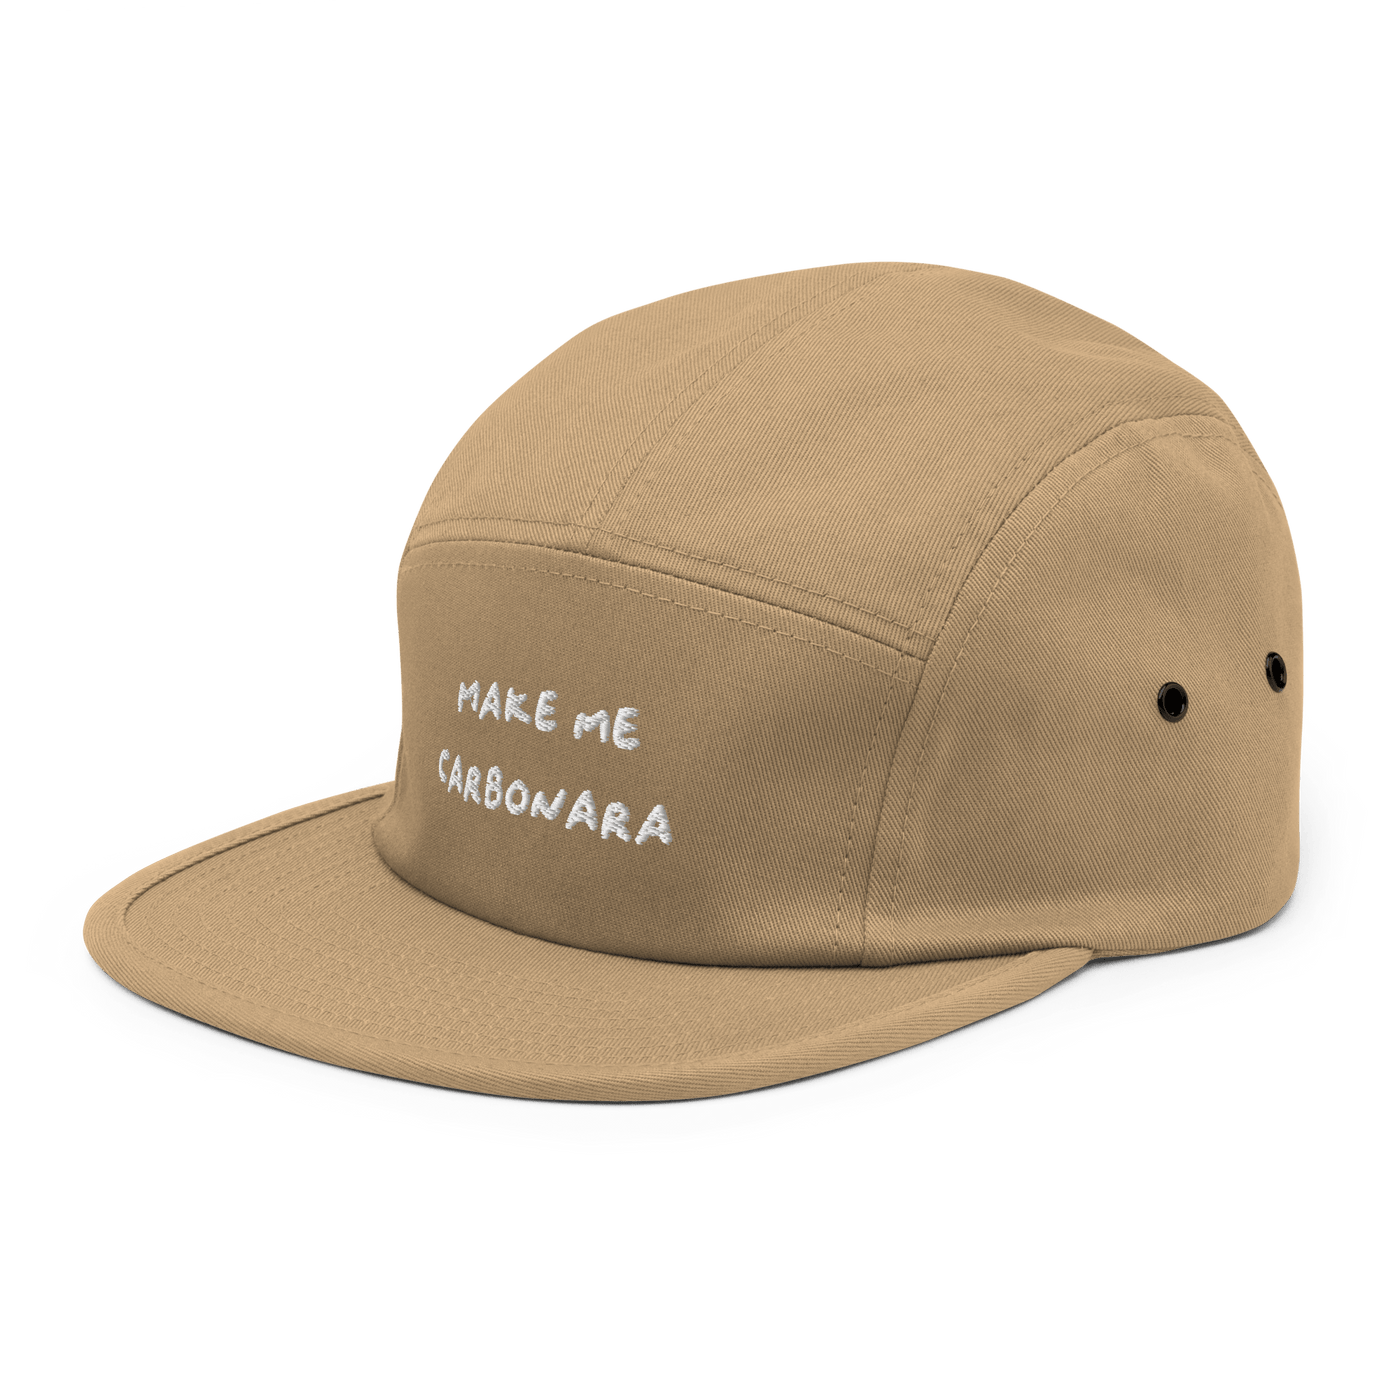 Make me Carbonara Five Panel Hat - Khaki - - Just Another Cap Store